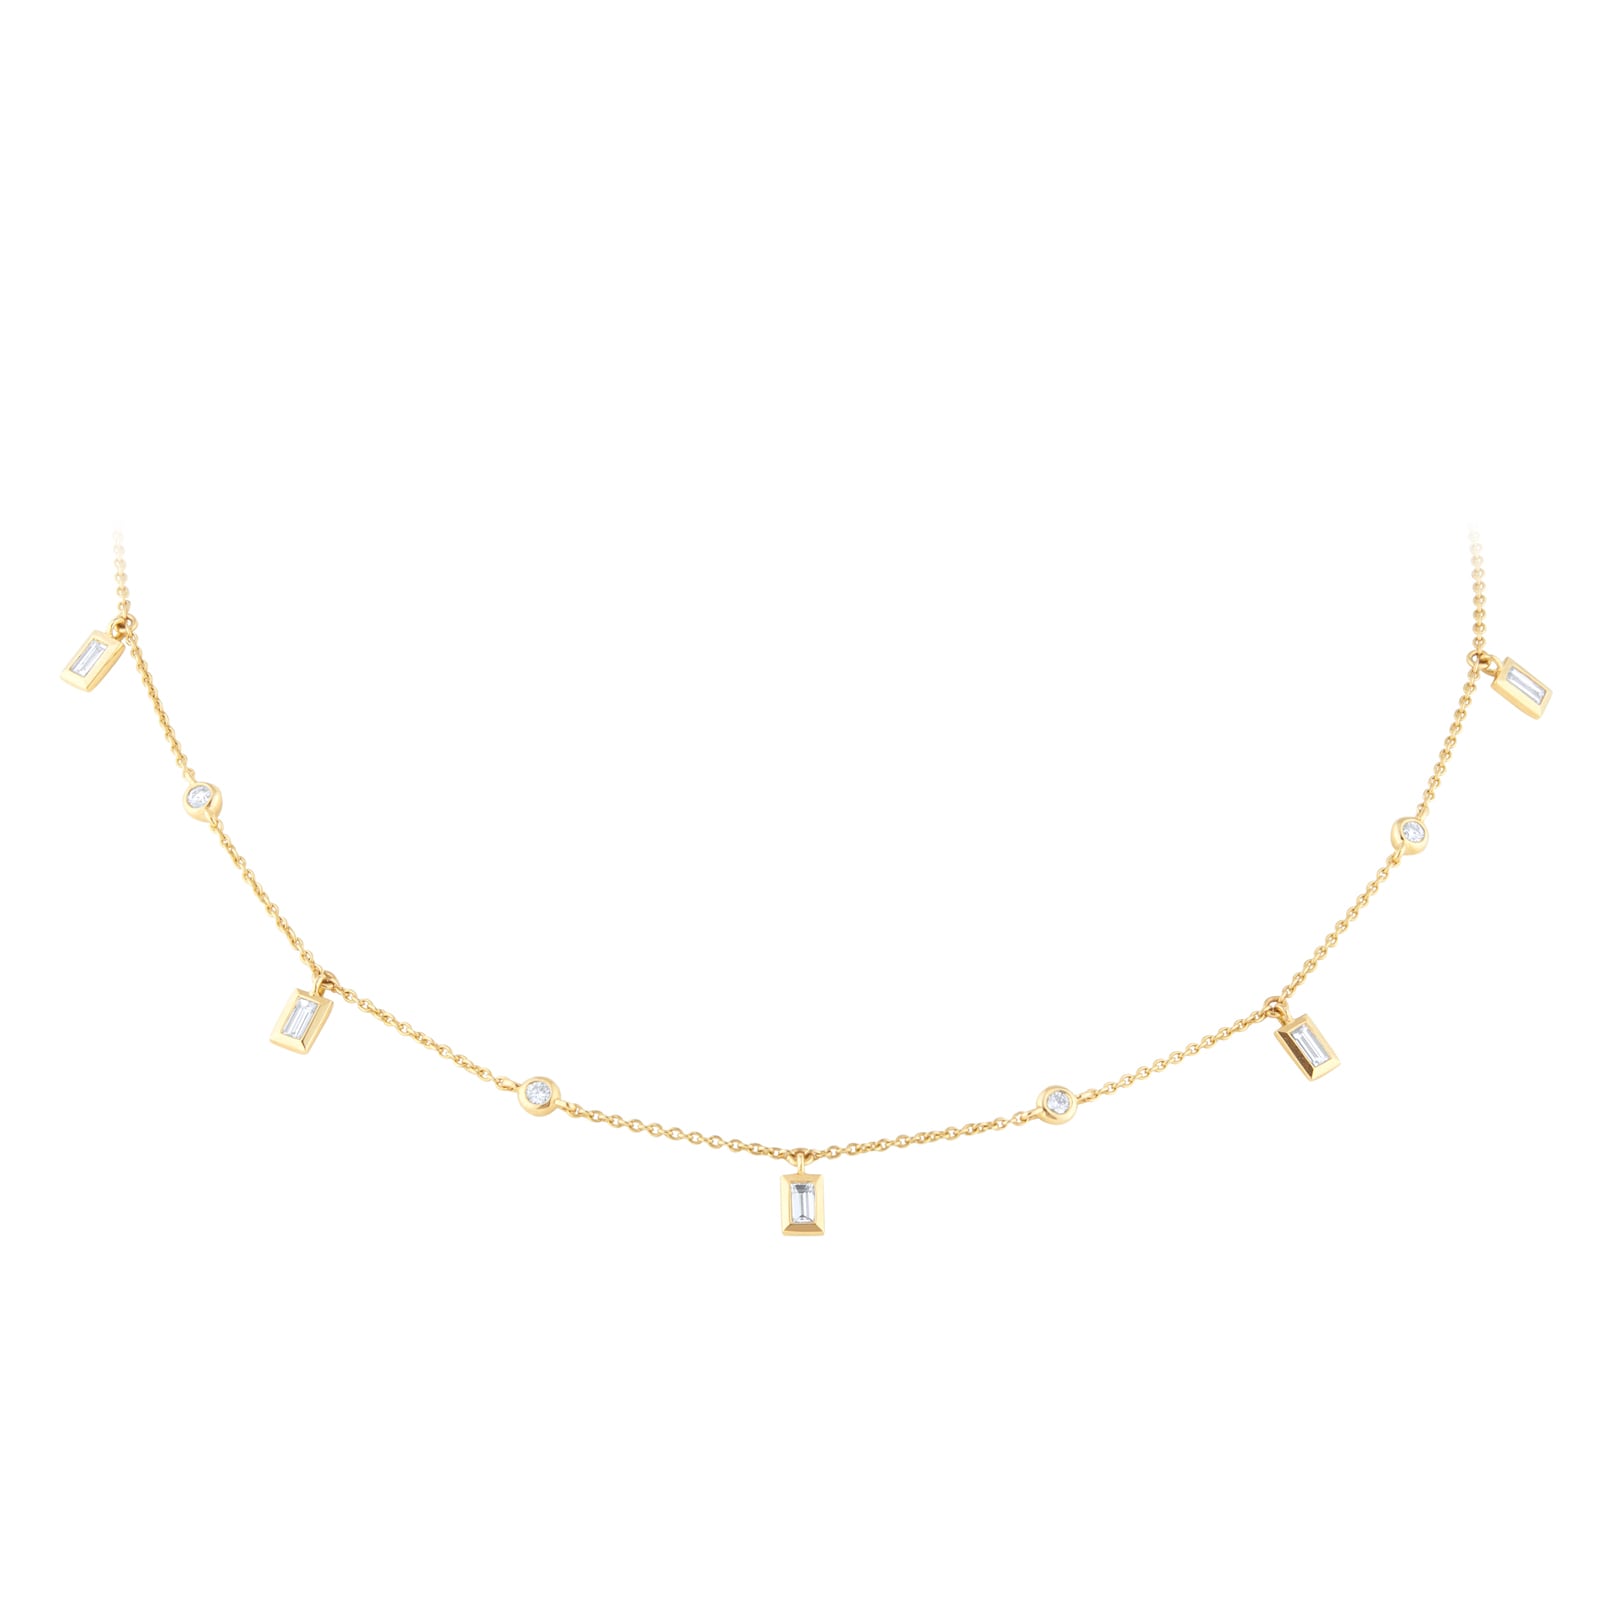 Gossamer 18ct Yellow Gold 0.50cttw Baguette Cut Diamond Necklace